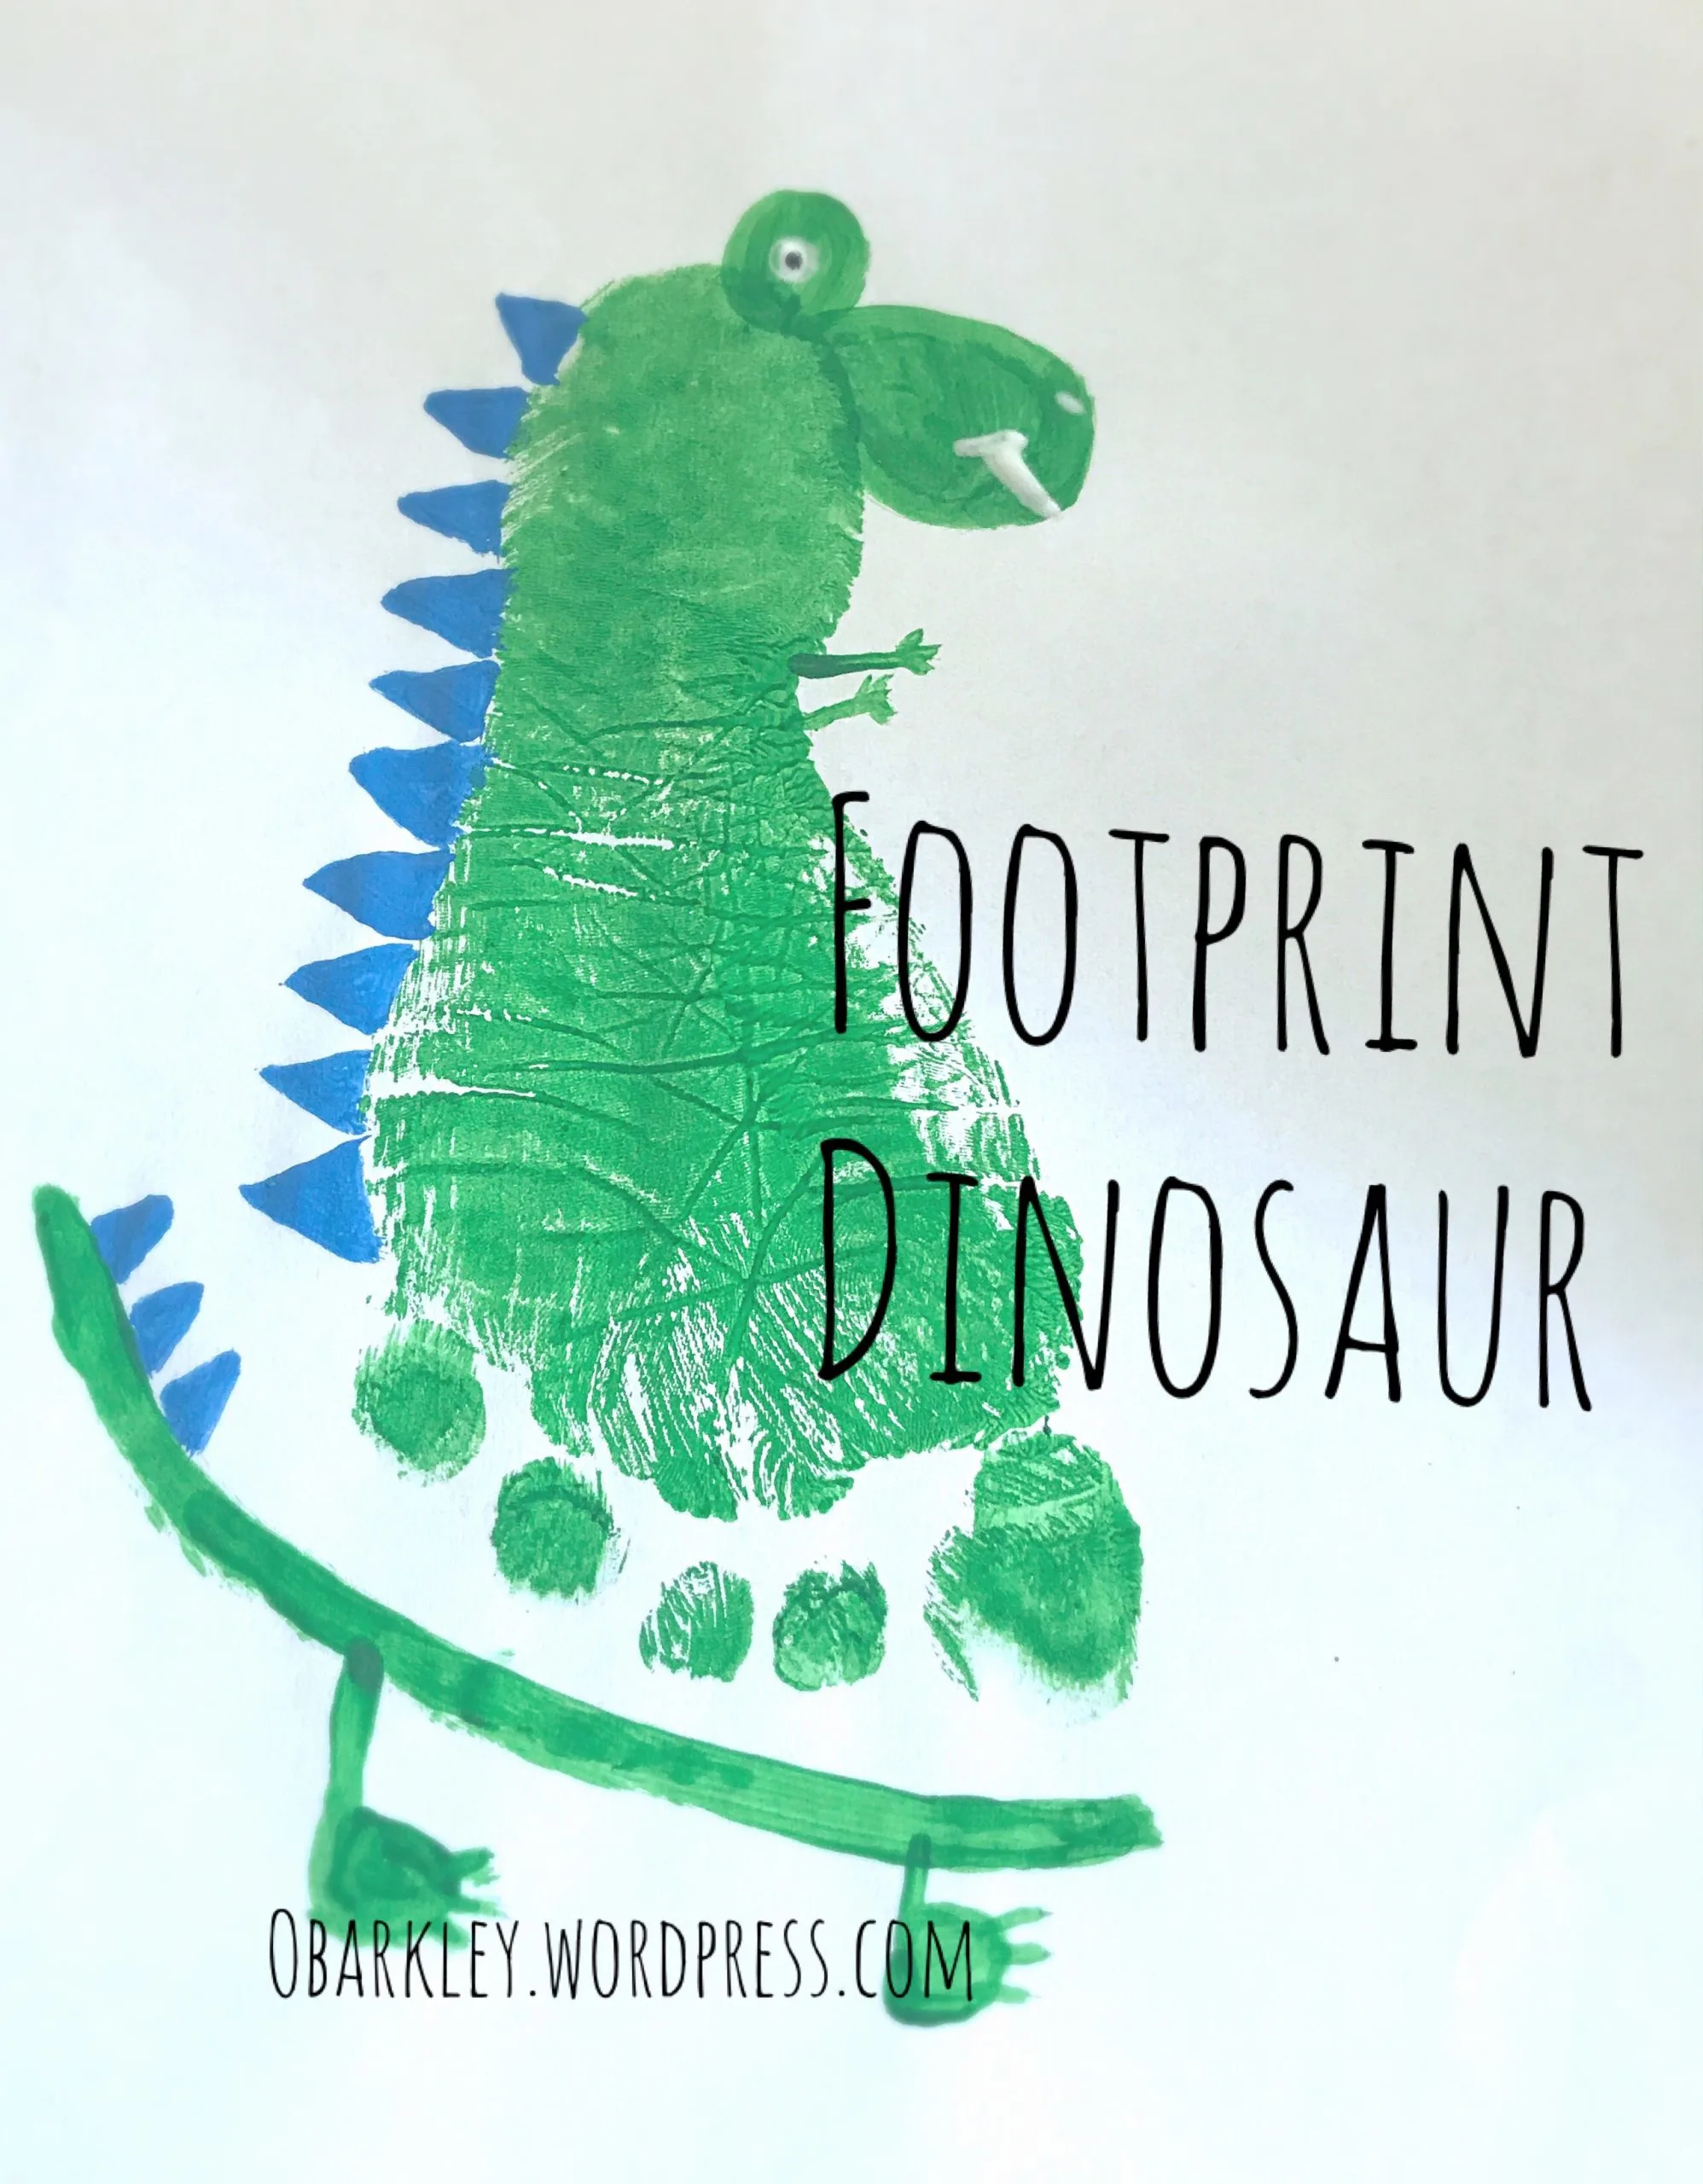 Footprint Dinosaur